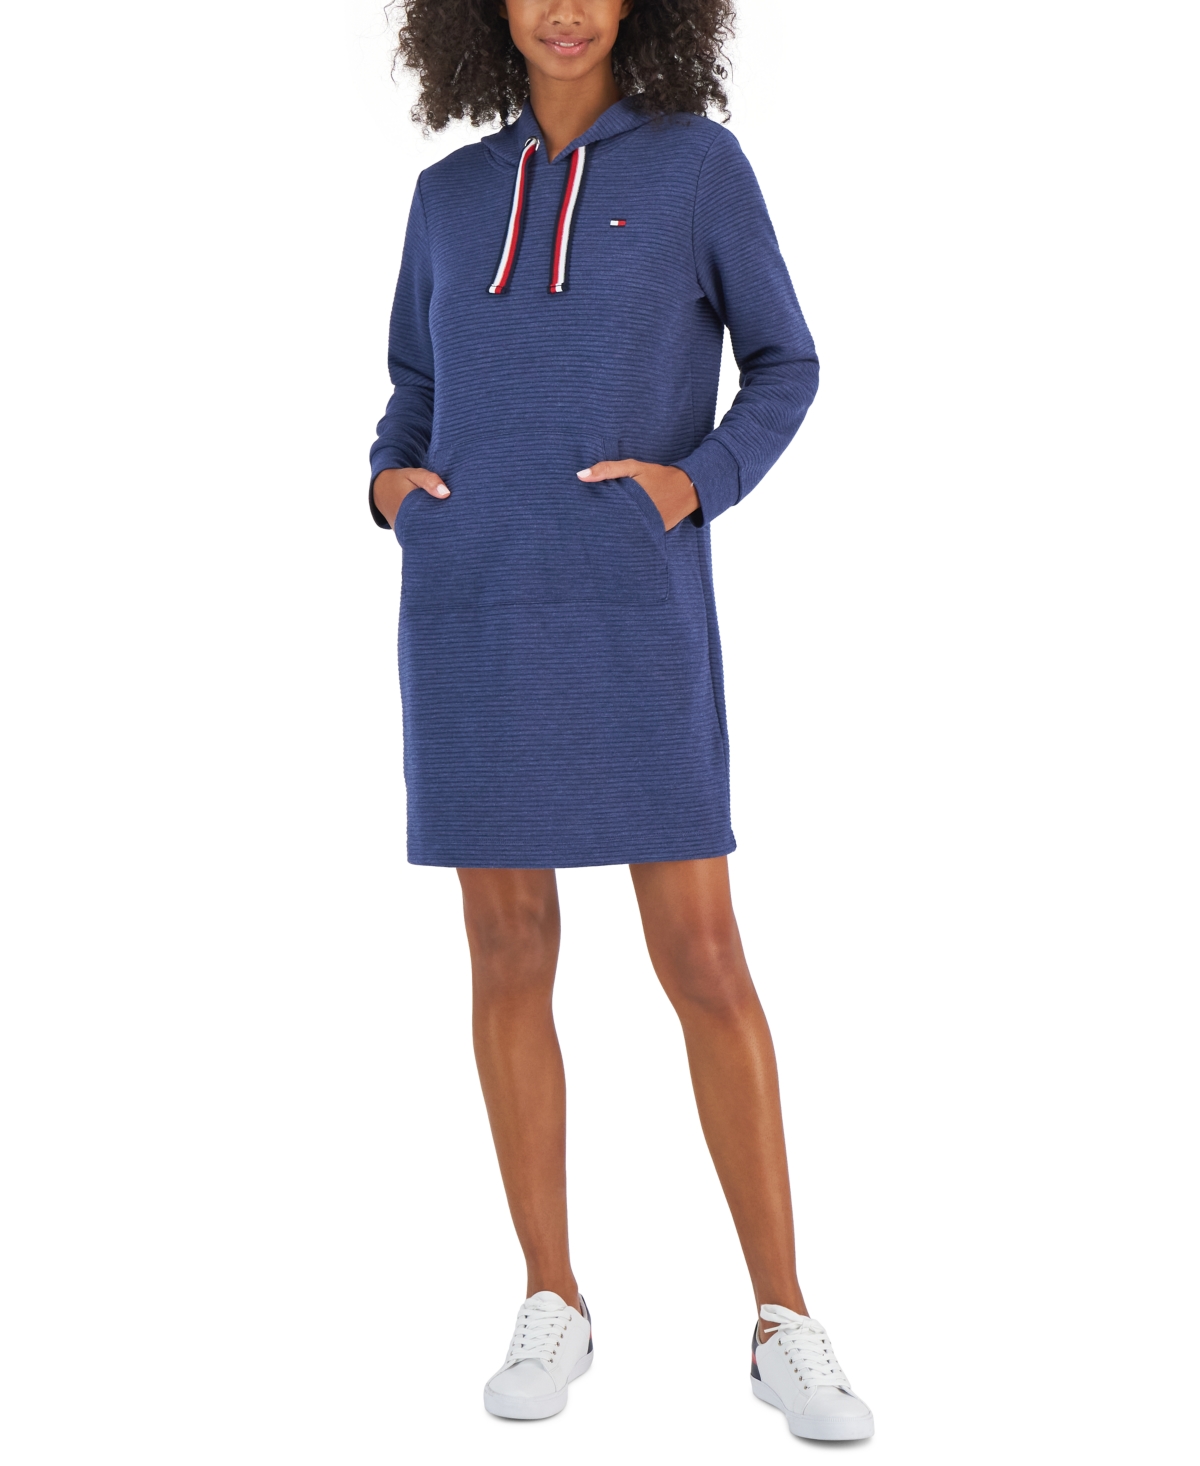 Tommy Hilfiger Women's Long Sleeve Hooded Sweatshirt Dress